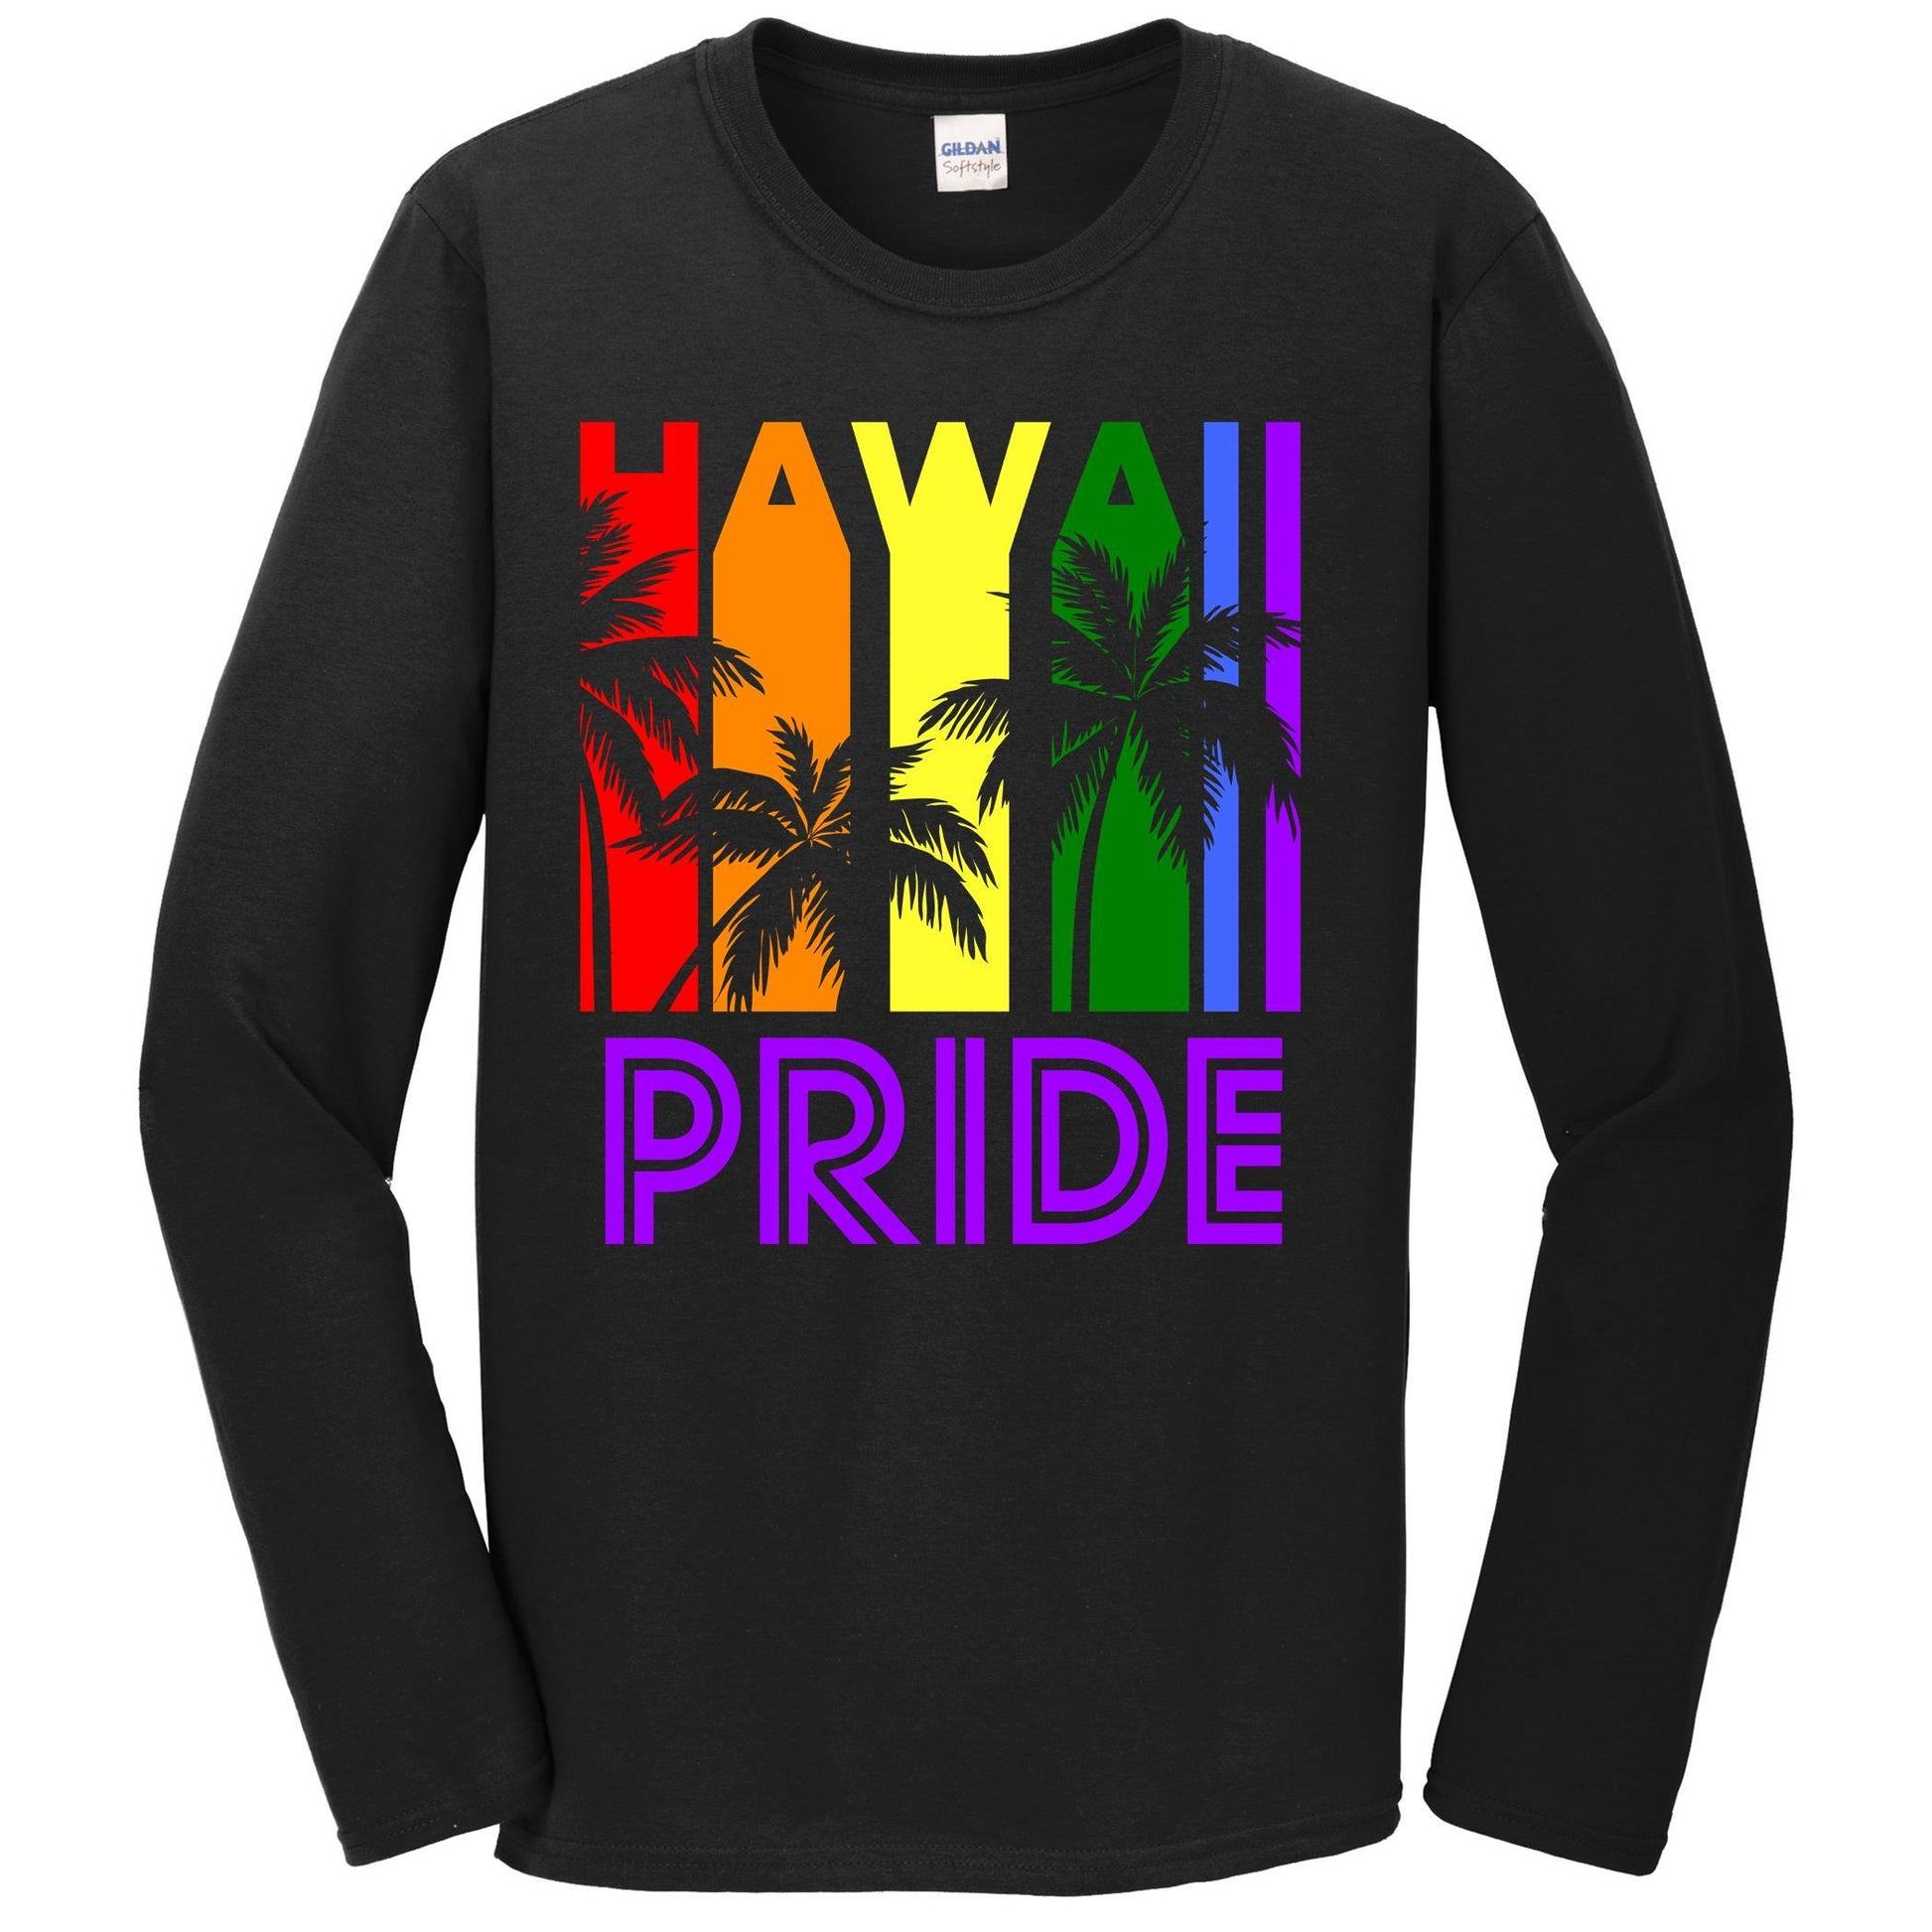 Hawaii Pride Gay Pride LGBTQ Rainbow Palm Trees Long Sleeve T-Shirt